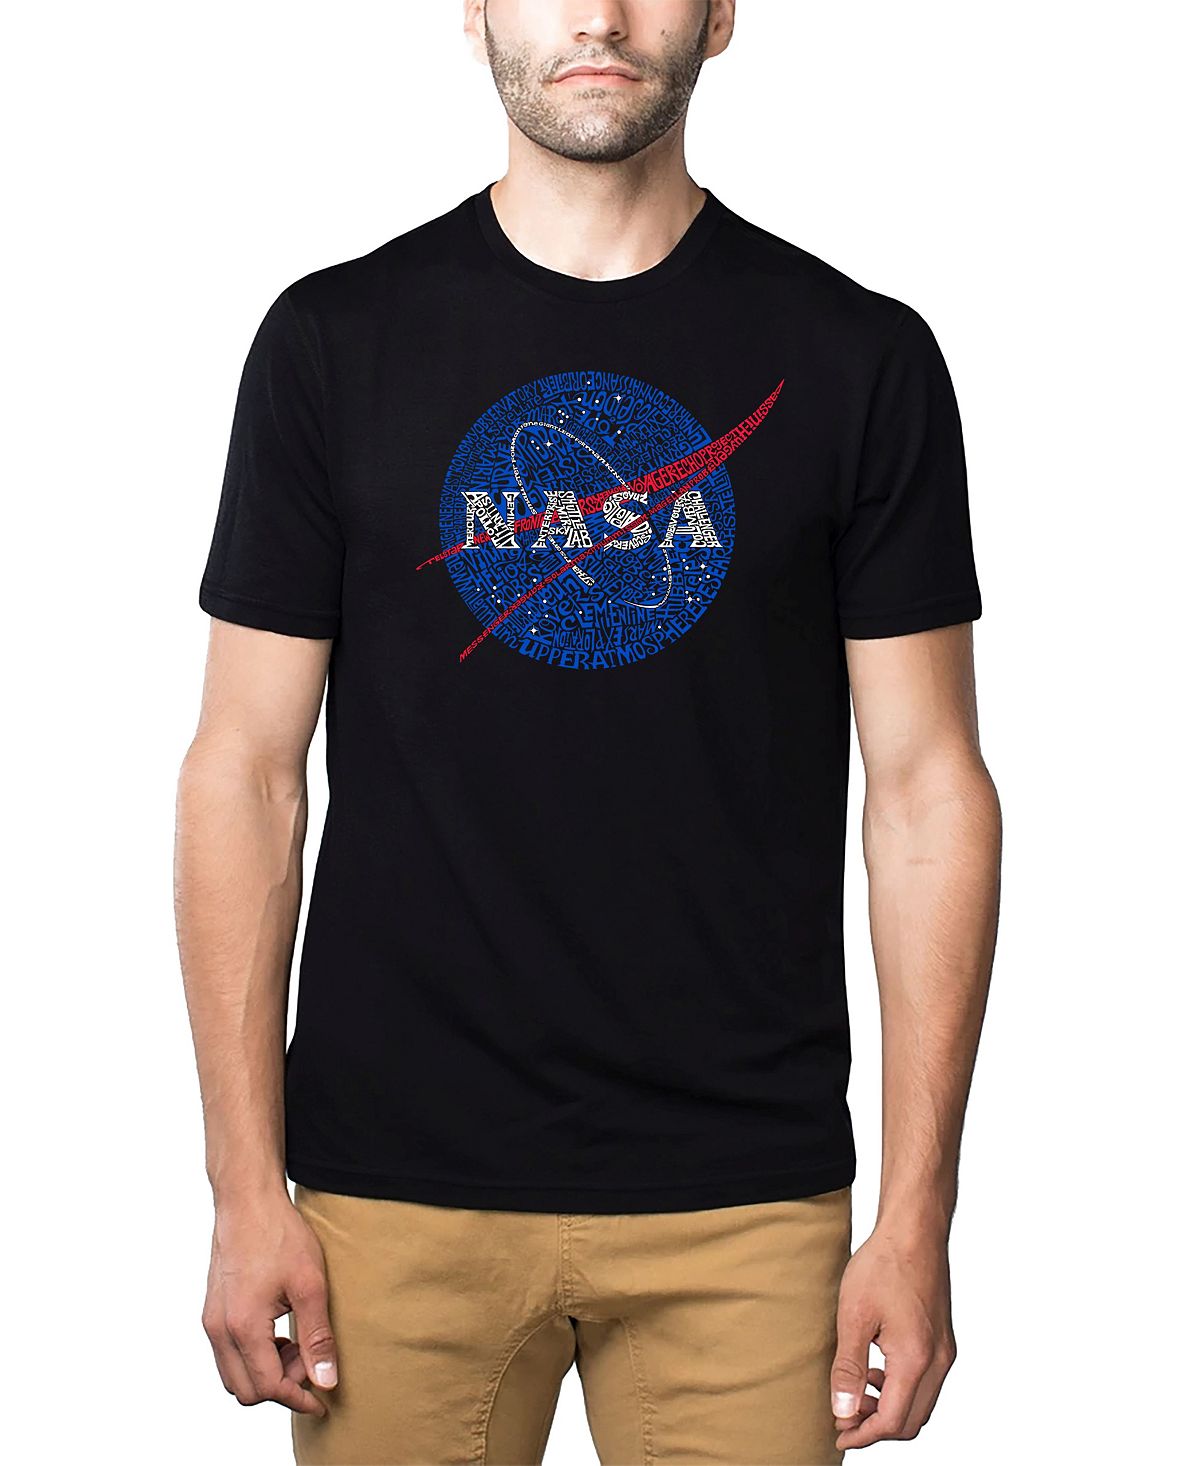 Мужская футболка Premium Blend Word Art с логотипом NASA Meatball LA Pop Art анхольт саймон хильдрет джереми бренд америка как культурные ценности одной нации завоевывают сердца и умы миллионов людей